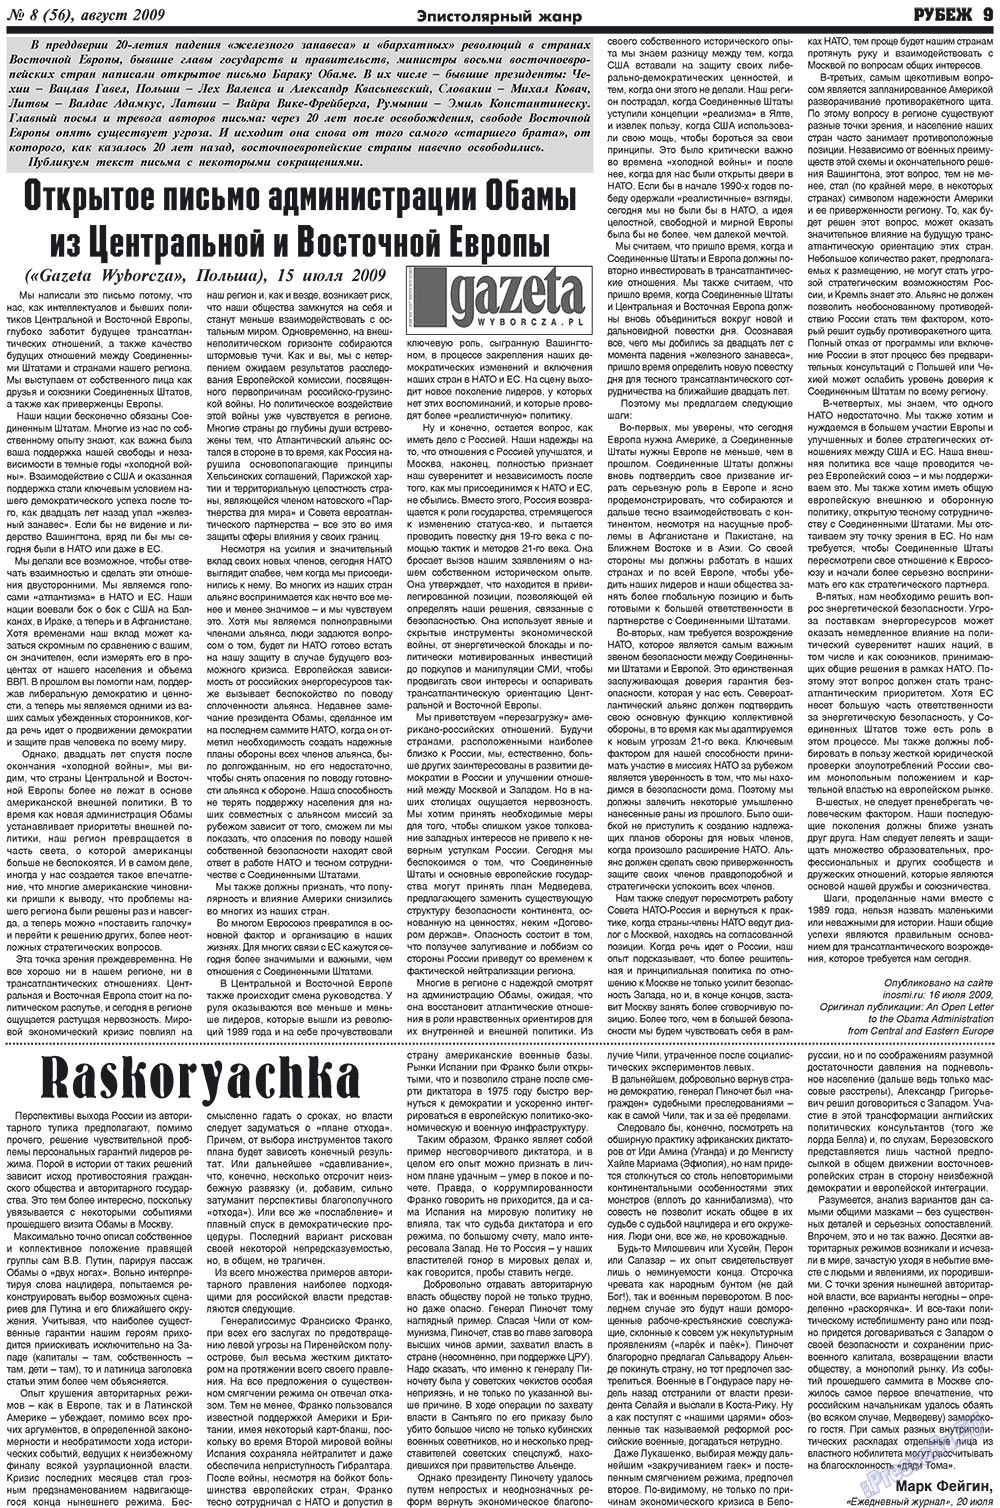 Рубеж (газета). 2009 год, номер 8, стр. 9